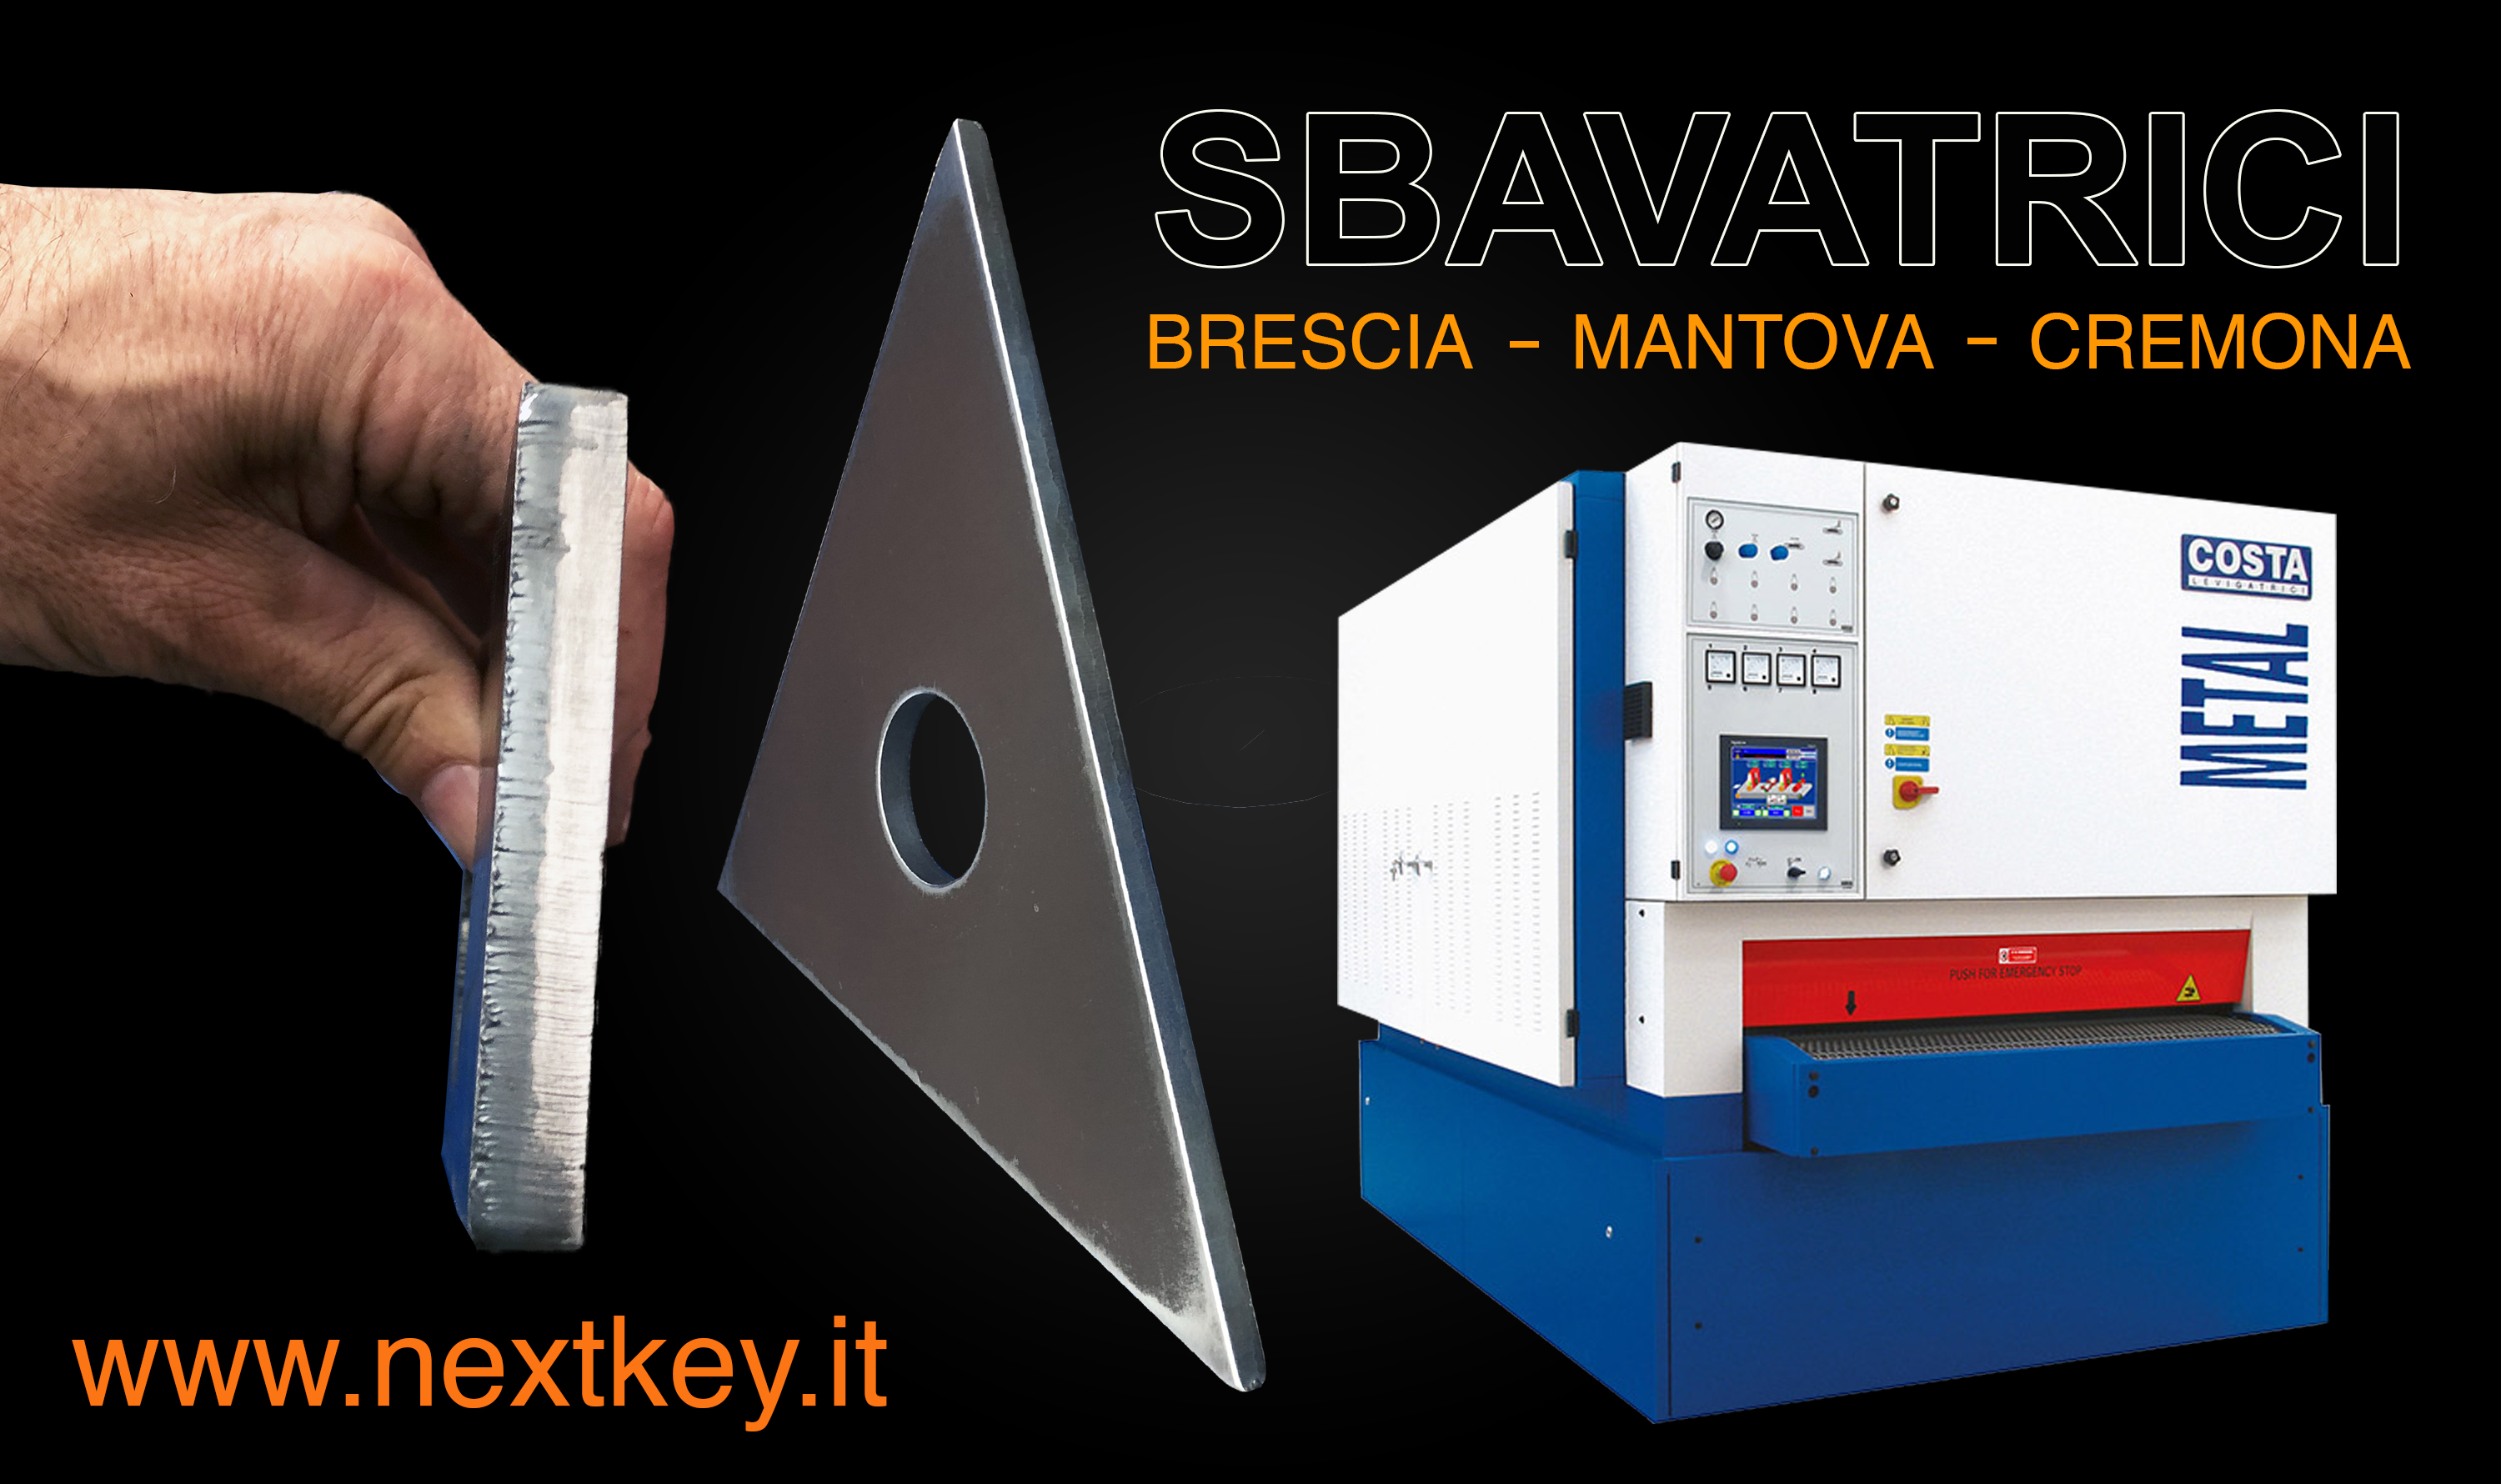 Foto 2 - Satinatura lamiere in acciaio inox in provincia di Mantova, Cremona e Brescia